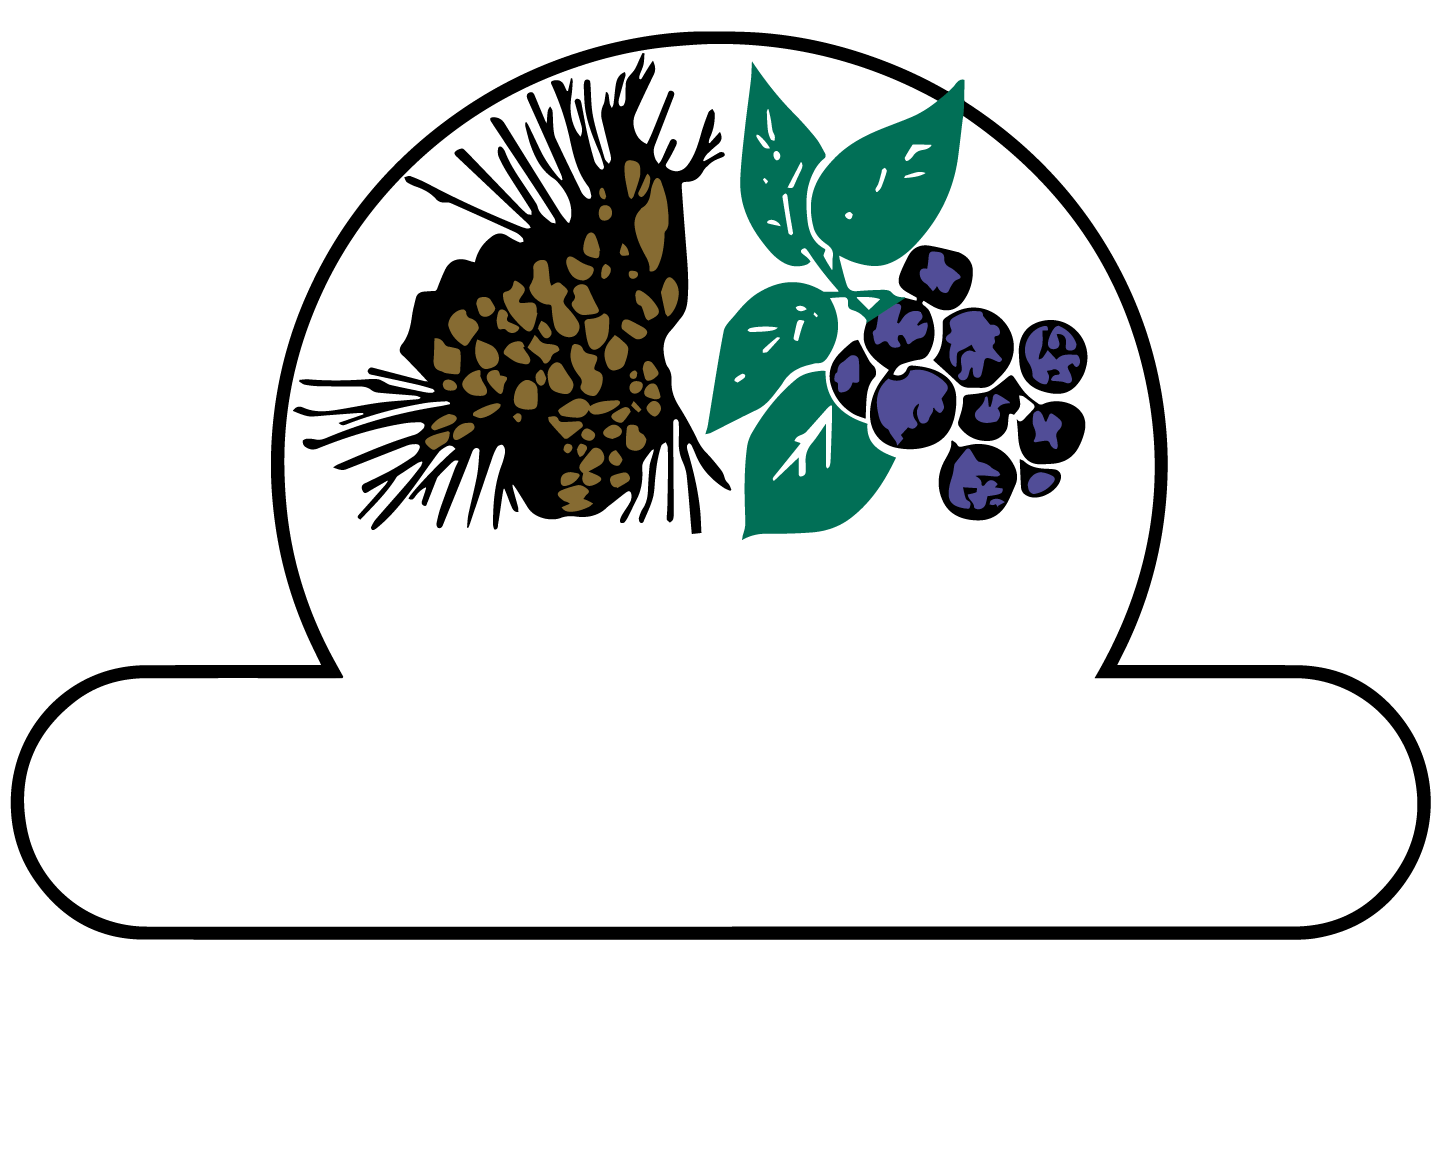 Blueberry Pines Estates